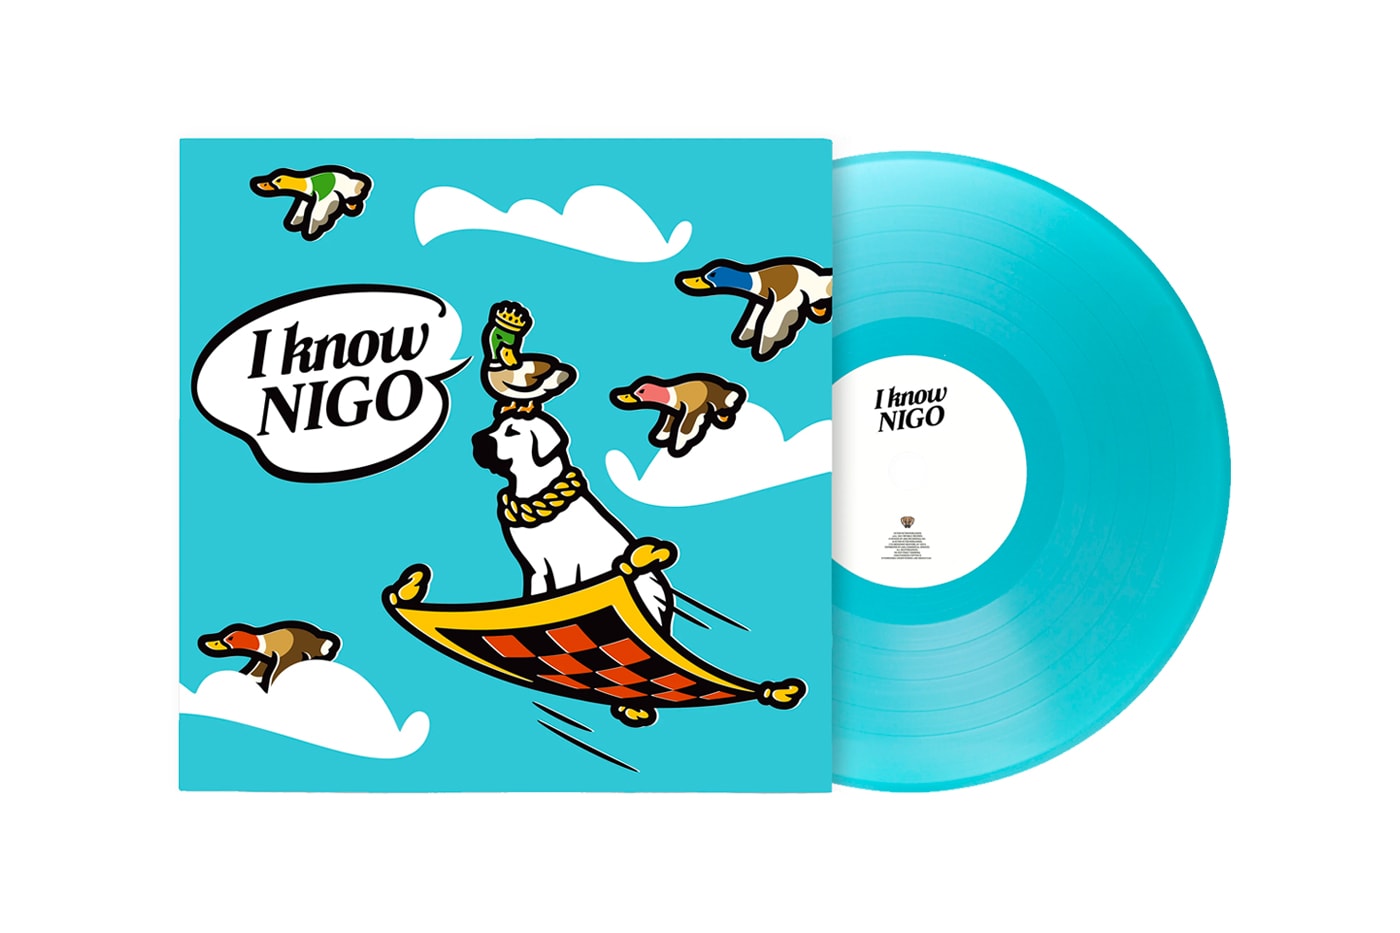 Stream Nigo's New Album 'I Know NIGO' Feat. Clipse, Pop Smoke